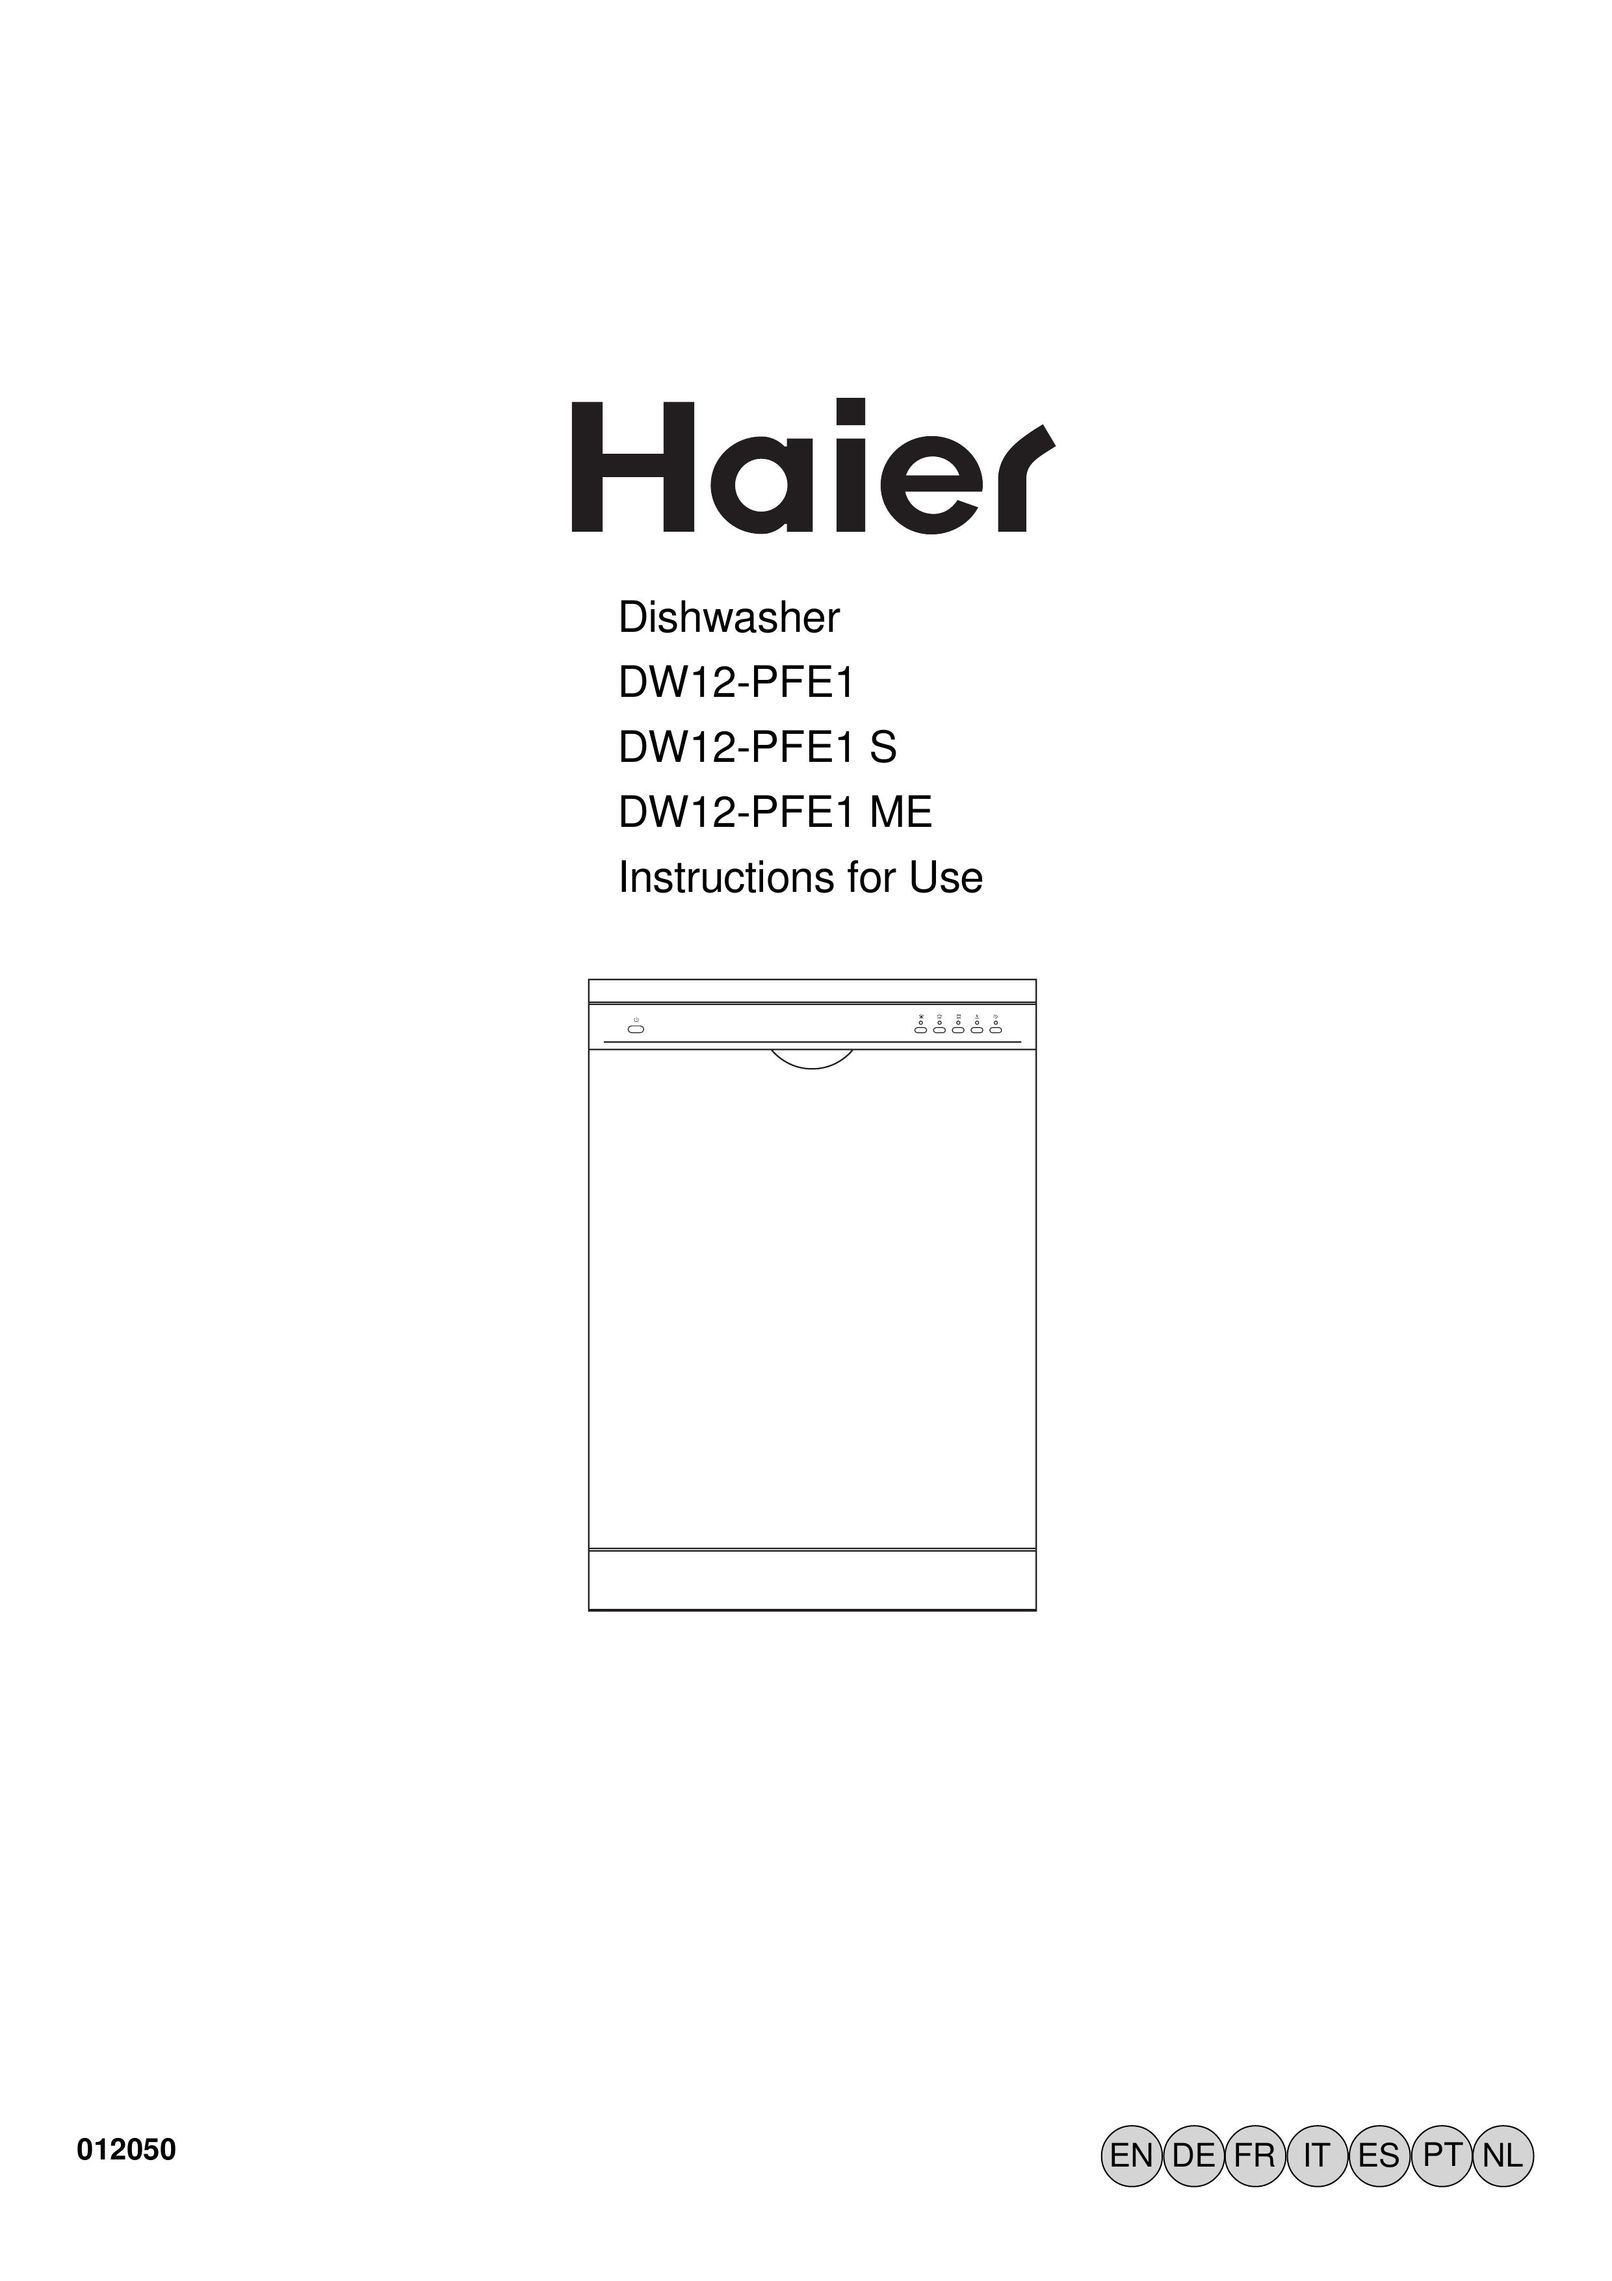 Haier DW12-PFE1 ME Dishwasher User Manual